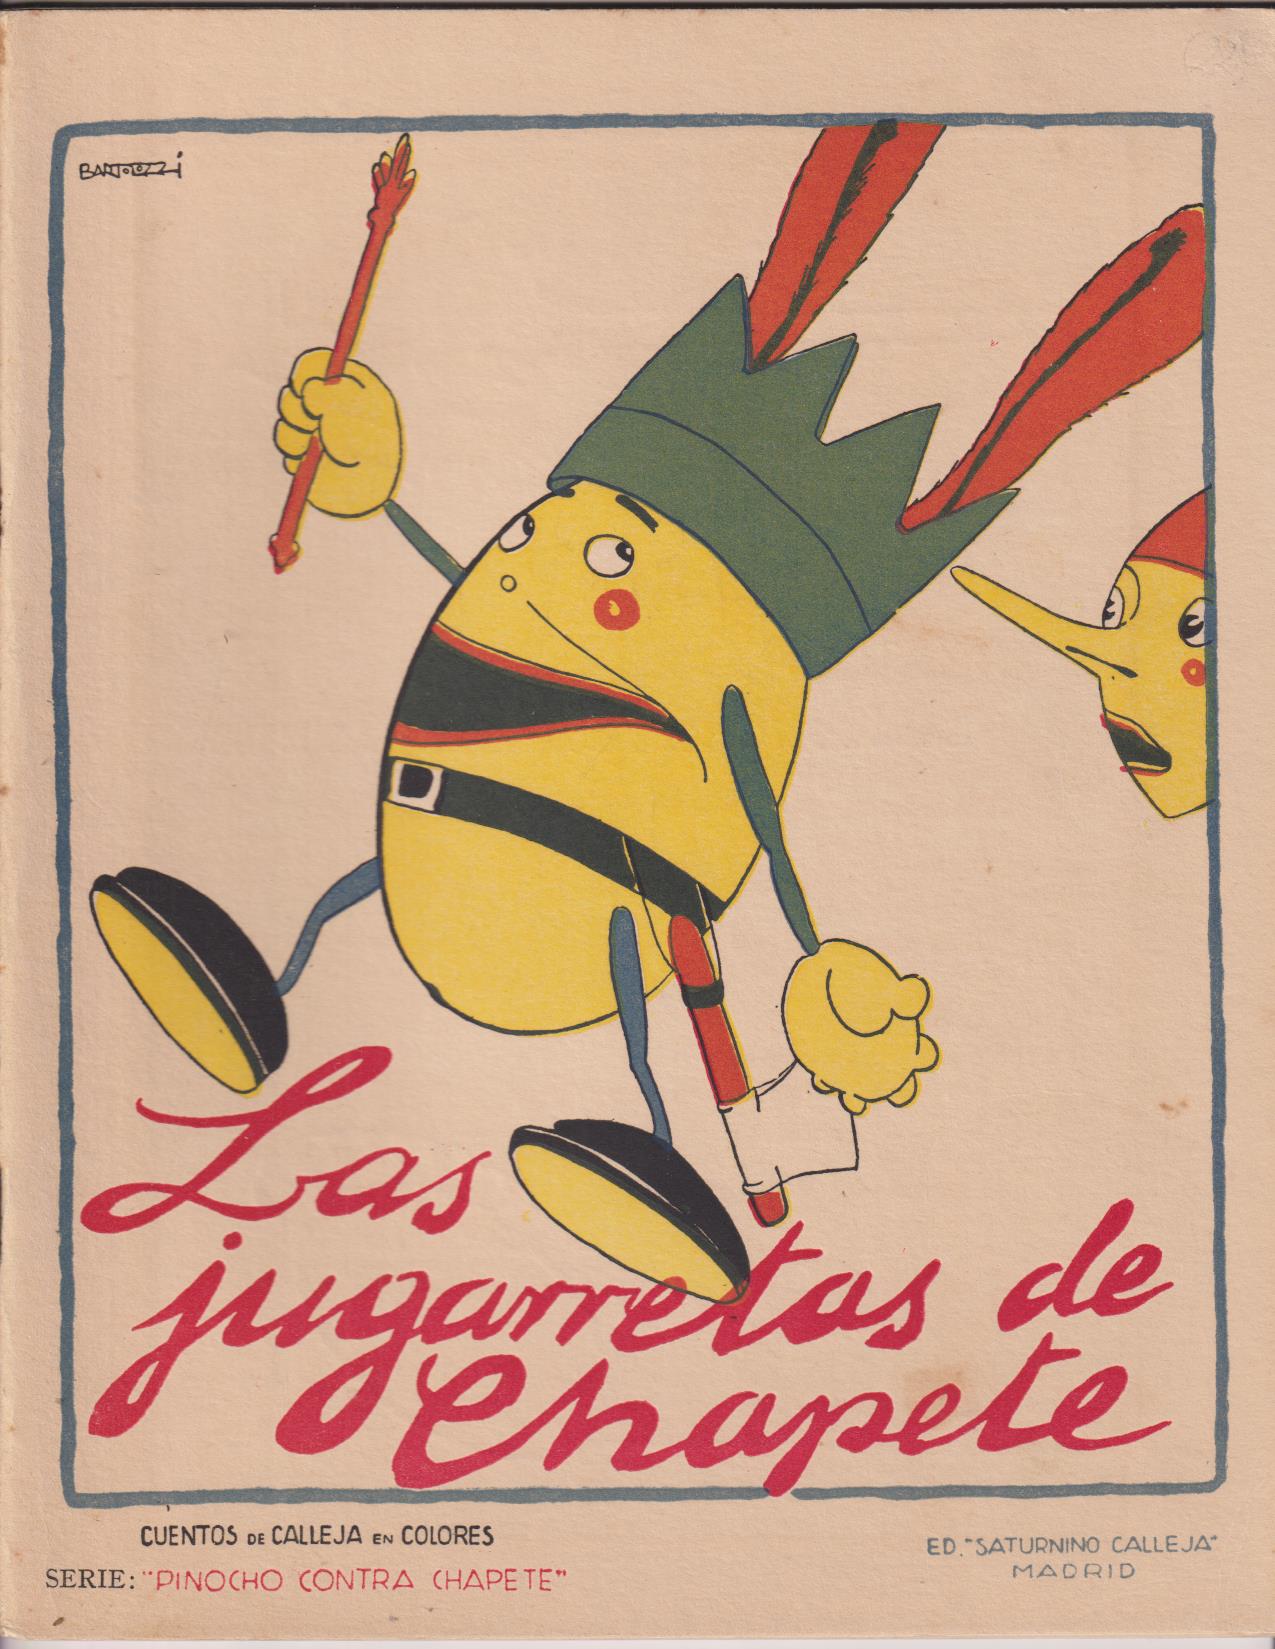 Pinocho contra Chapete nº 22. Las jugarretas de Chapete. 1ª Edición Calleja 1923. DIFÍCIL ASÍ